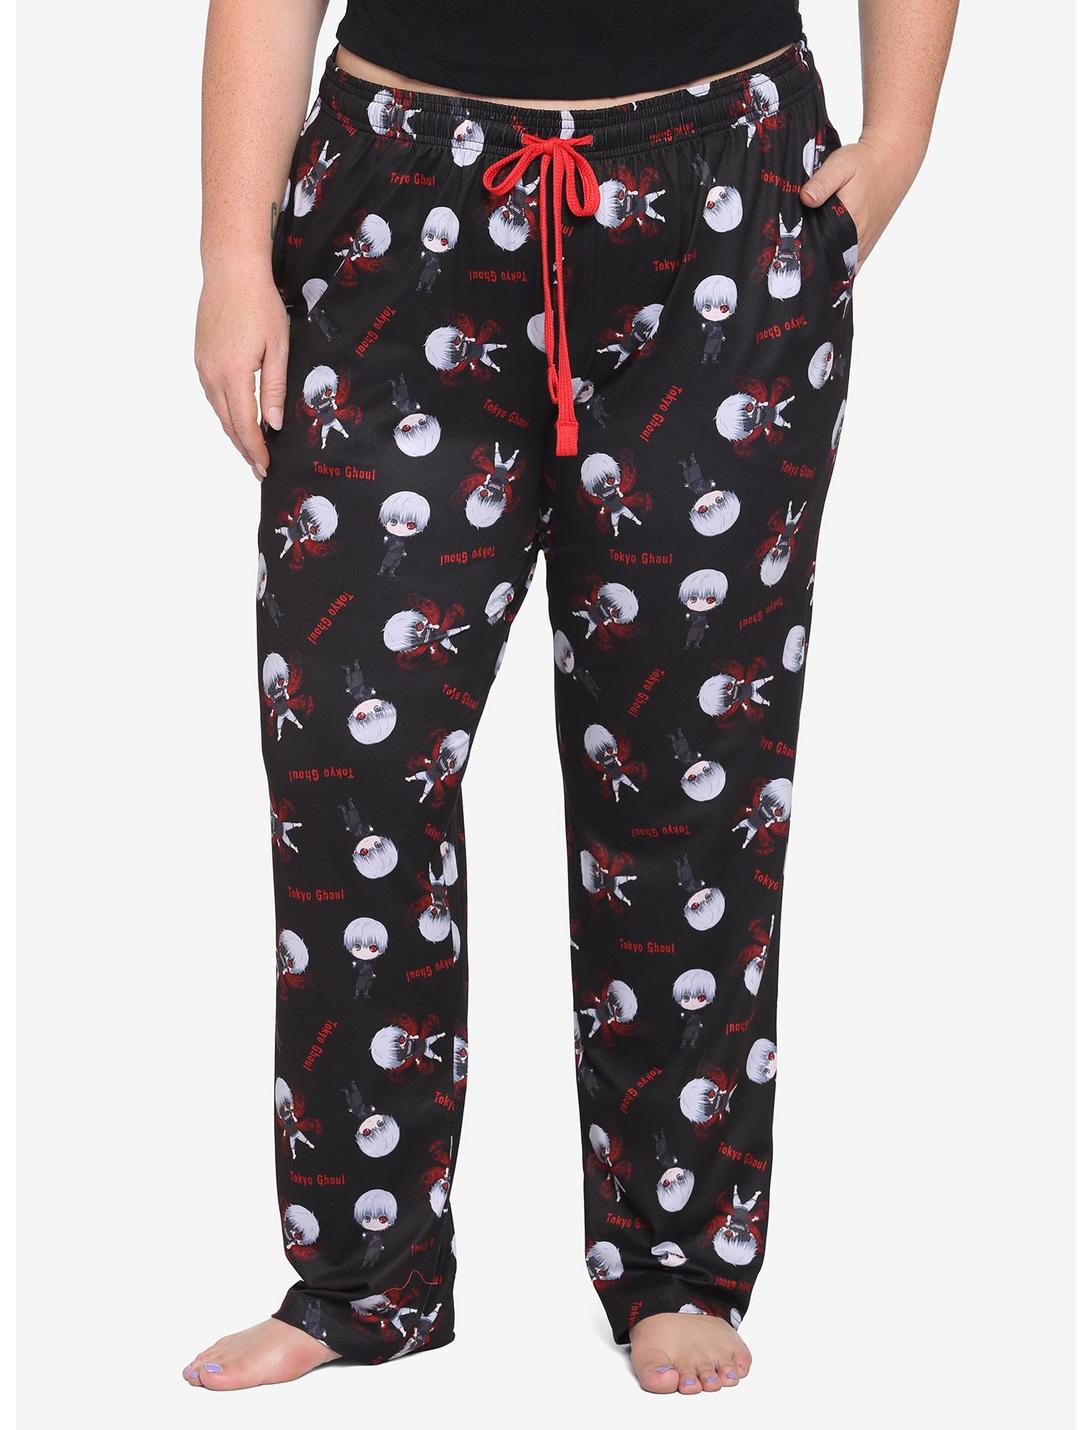 Tokyo Ghoul Pajama Pants Plus Size, MULTI, hi-res